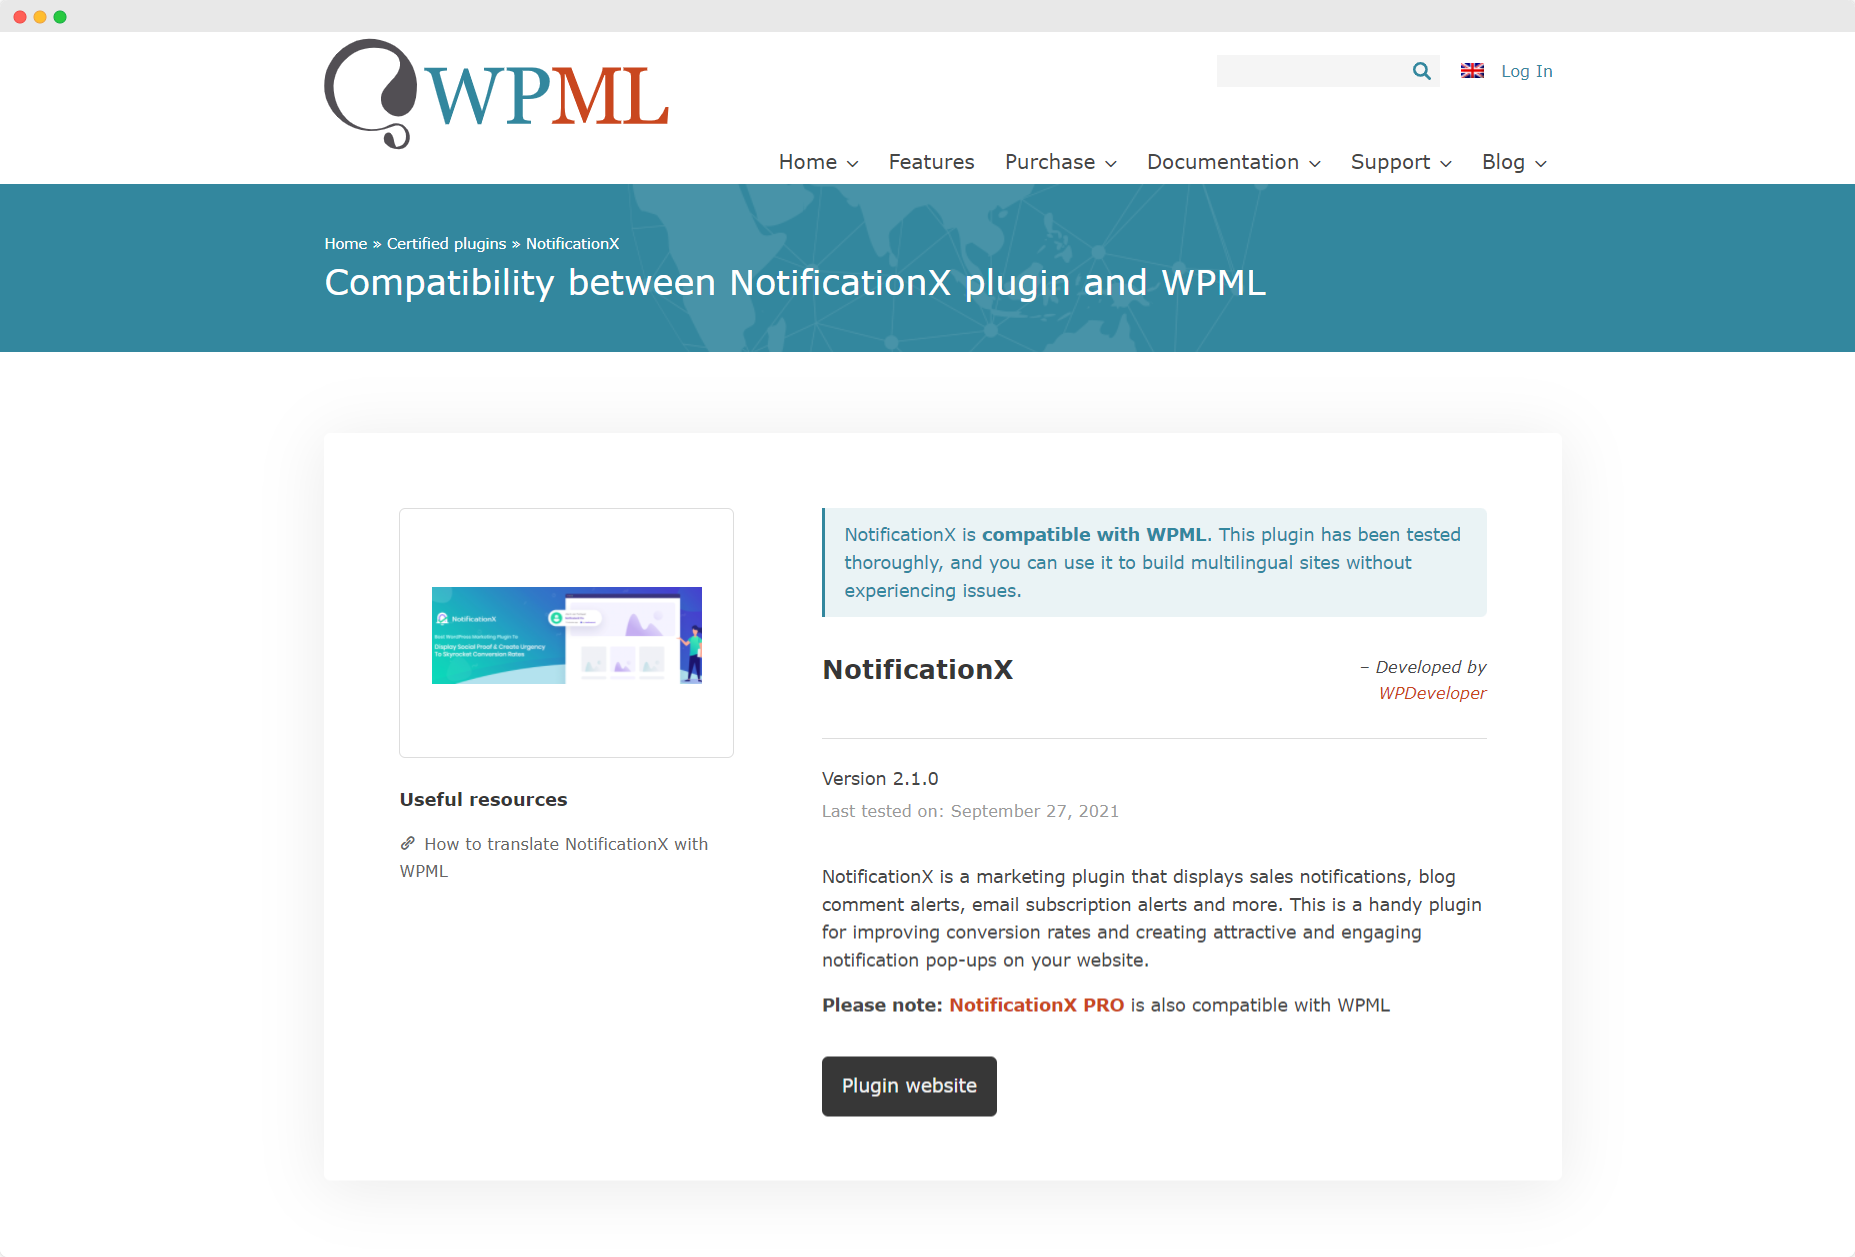 [NOUVEAU] NotificationX est désormais compatible avec WPML 1